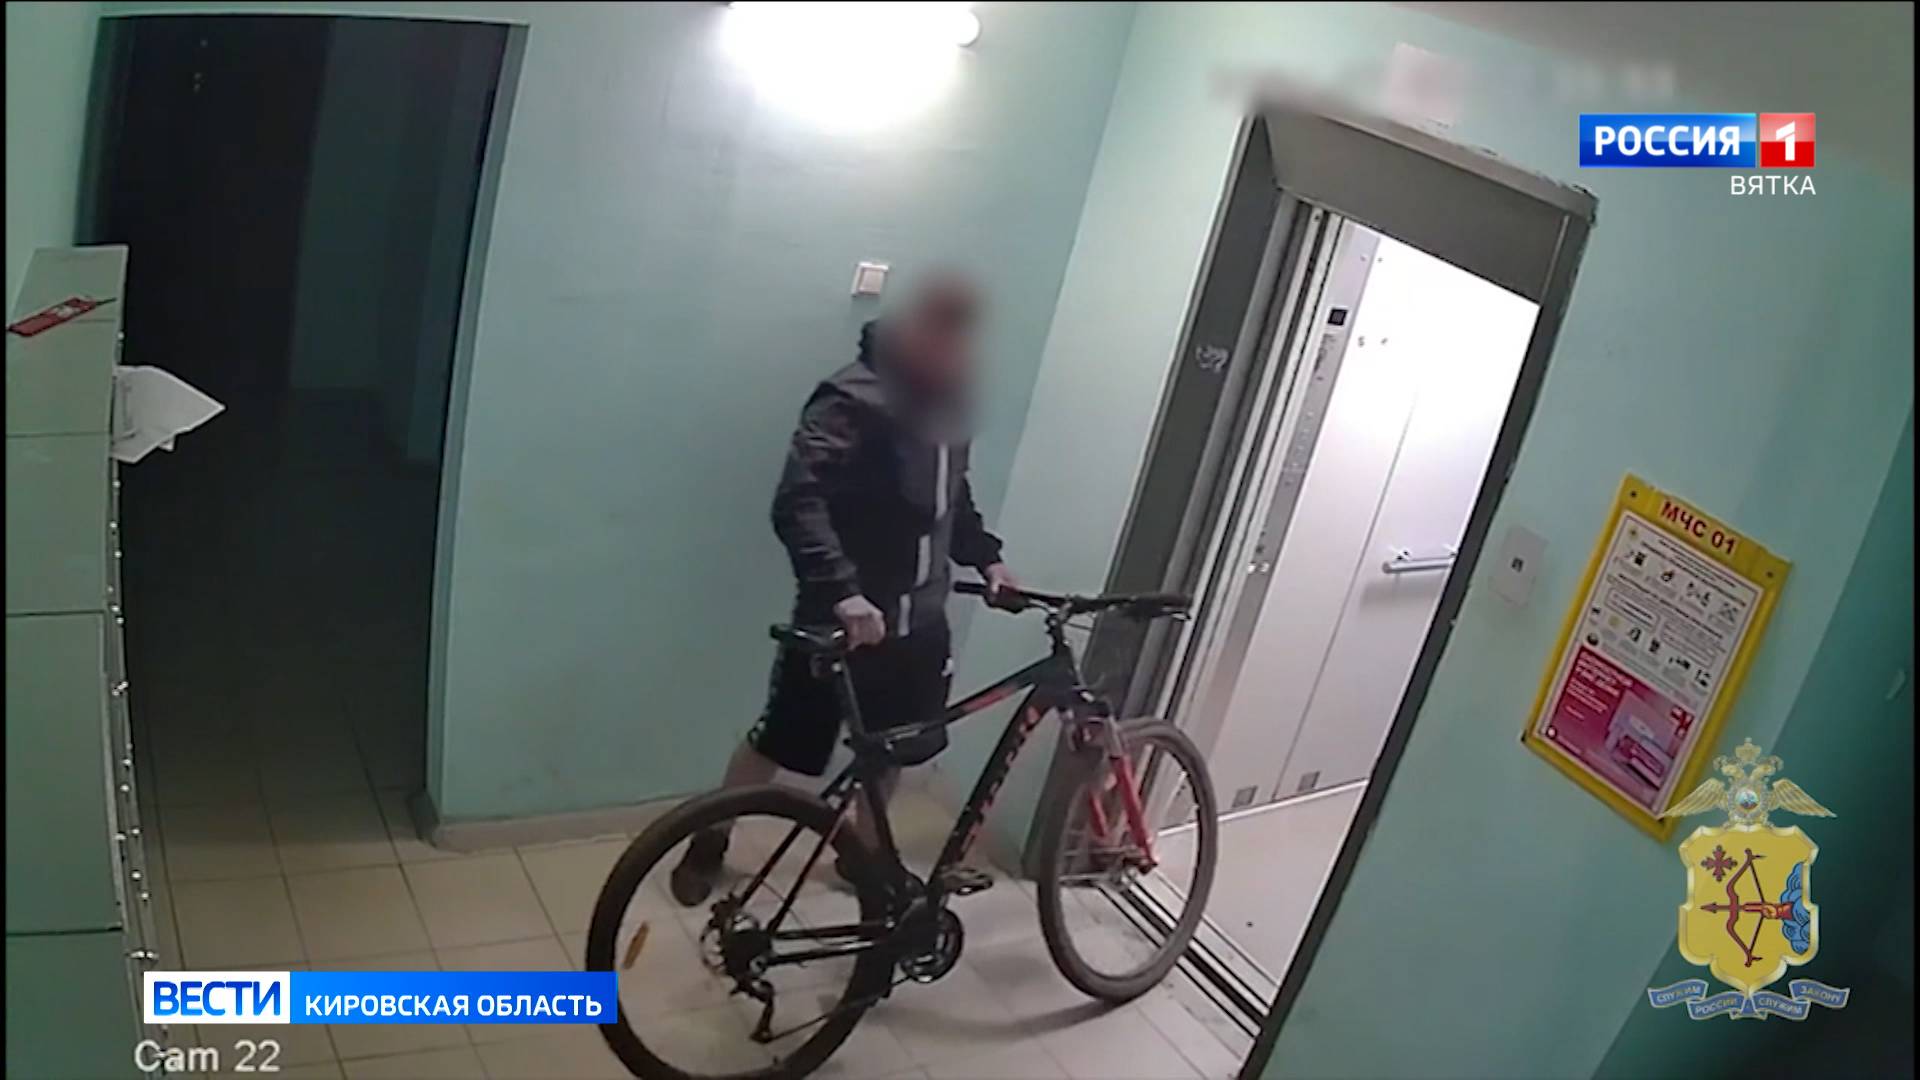 В Кирове полицейские задержали подозреваемого в краже велосипеда